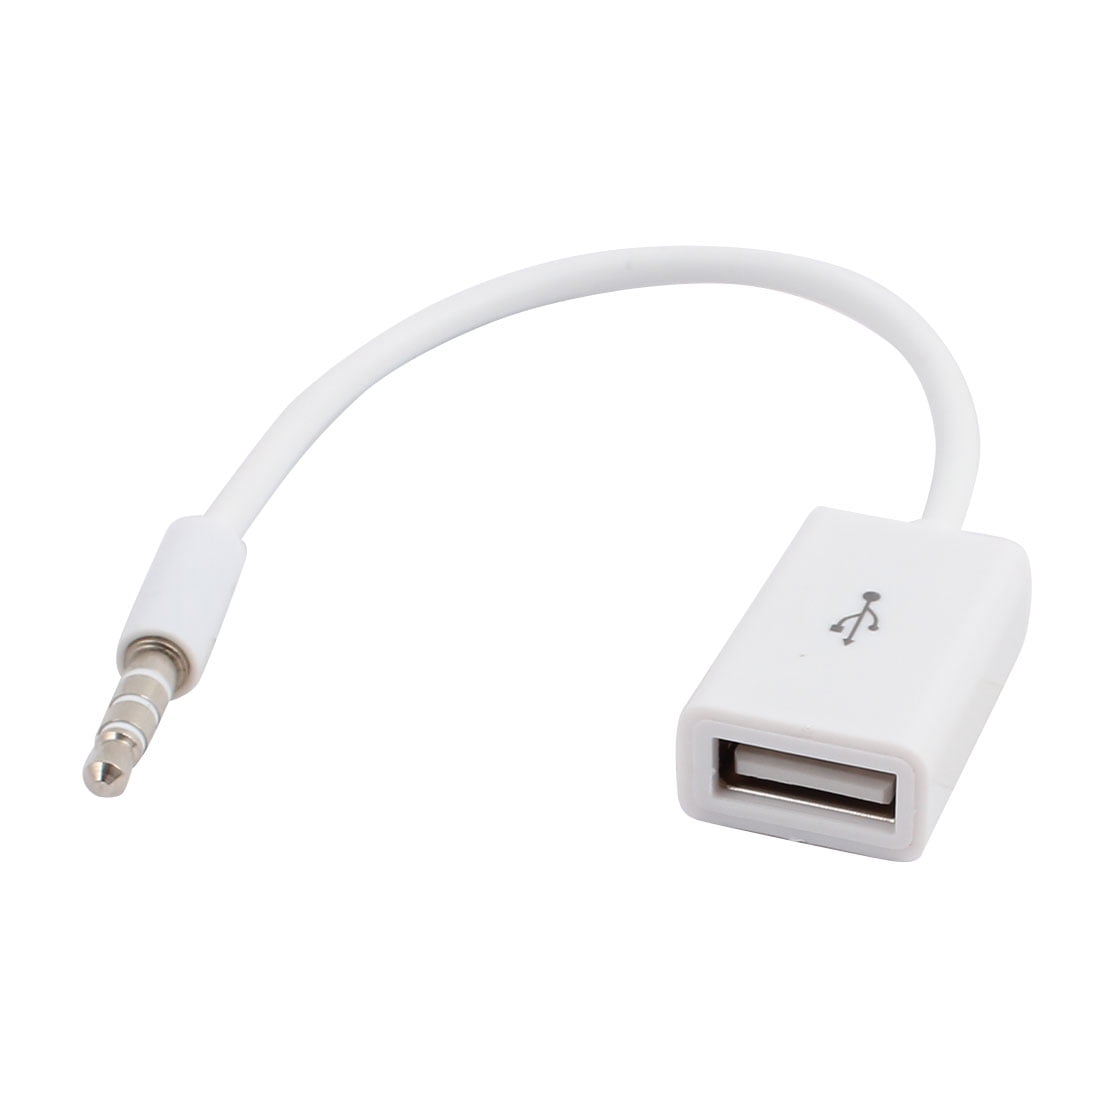 Altijd Vochtig Uitreiken Sync 3.5mm Male AUX Audio Plug Jack to USB 2.0 Female Converter Cable Cord  - Walmart.com